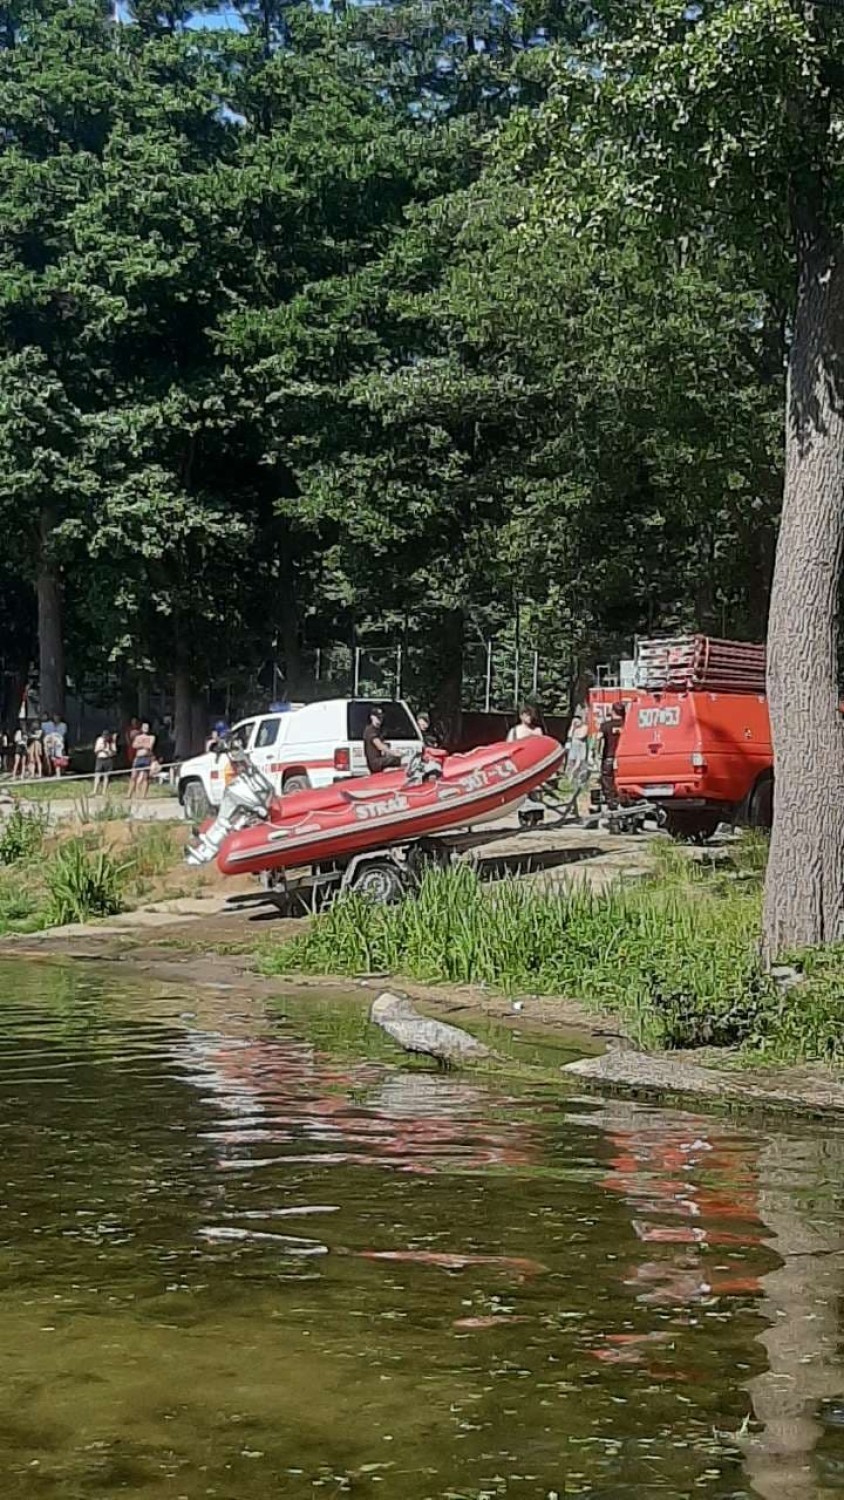 Akcja poszukiwawcza nad jeziorem Jaroszewskim w Sierakowie